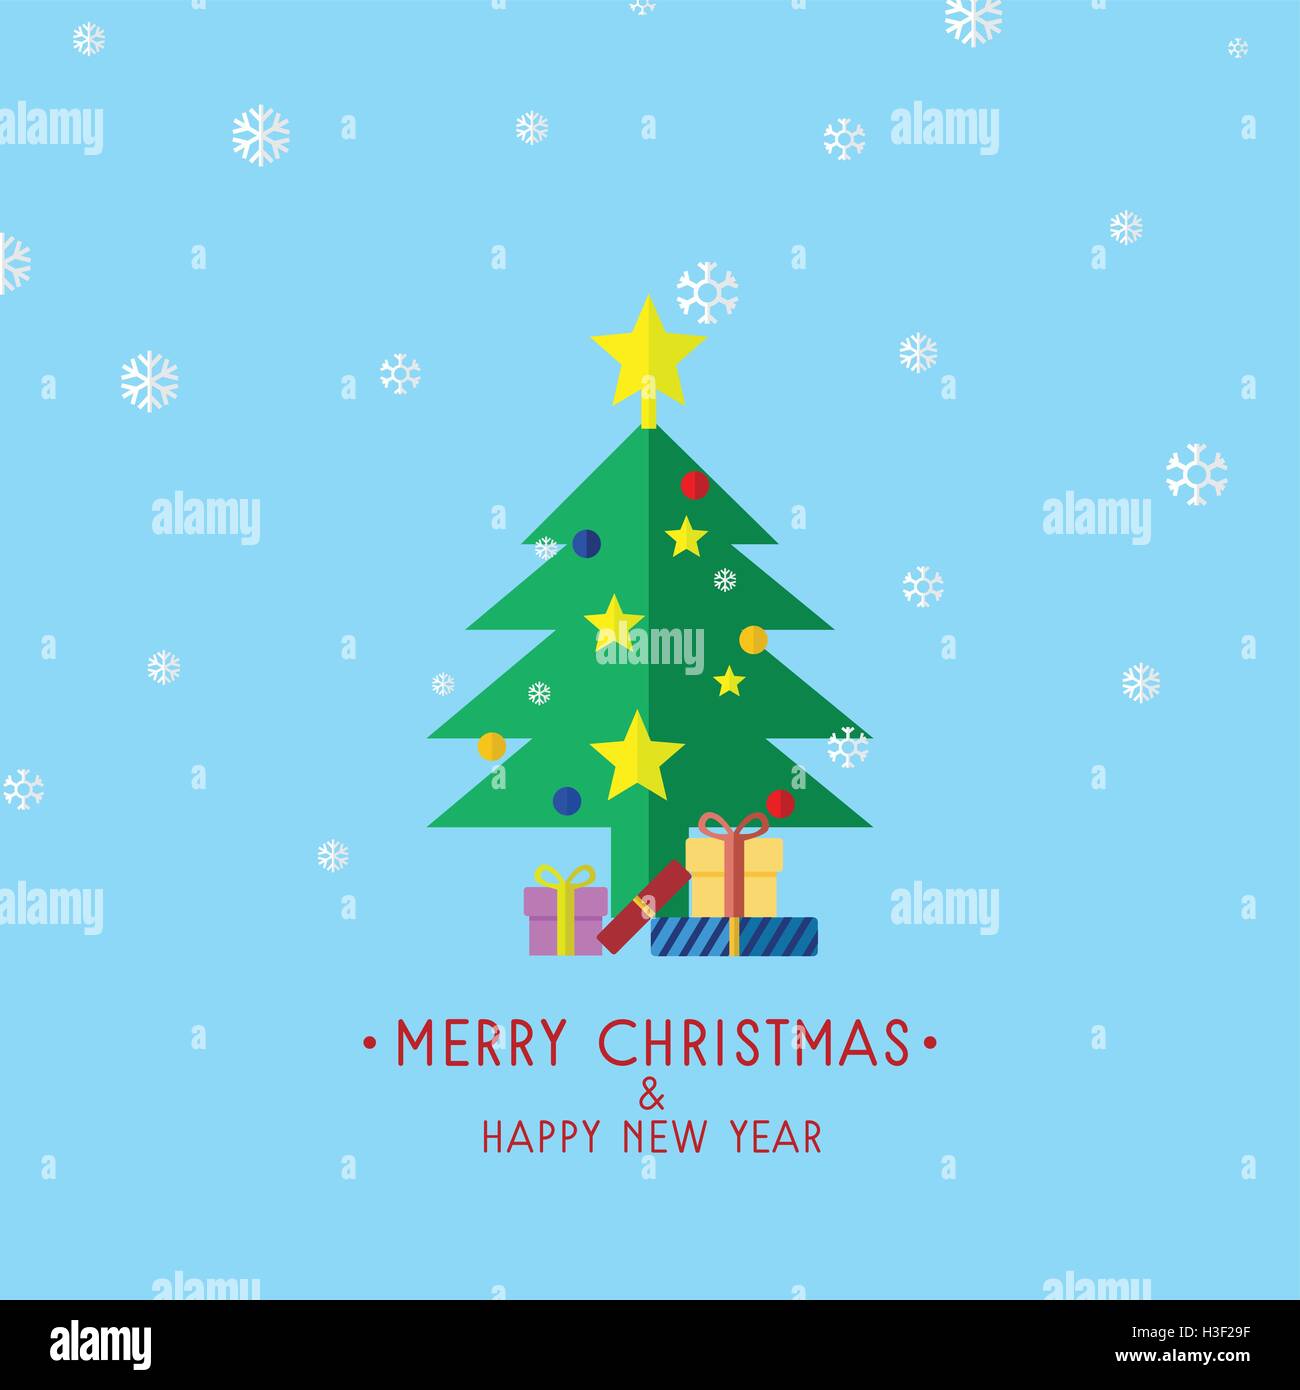 Weihnachtsbaum mit Geschenken, Weihnachtskarte-Vektor-Illustration Stock Vektor